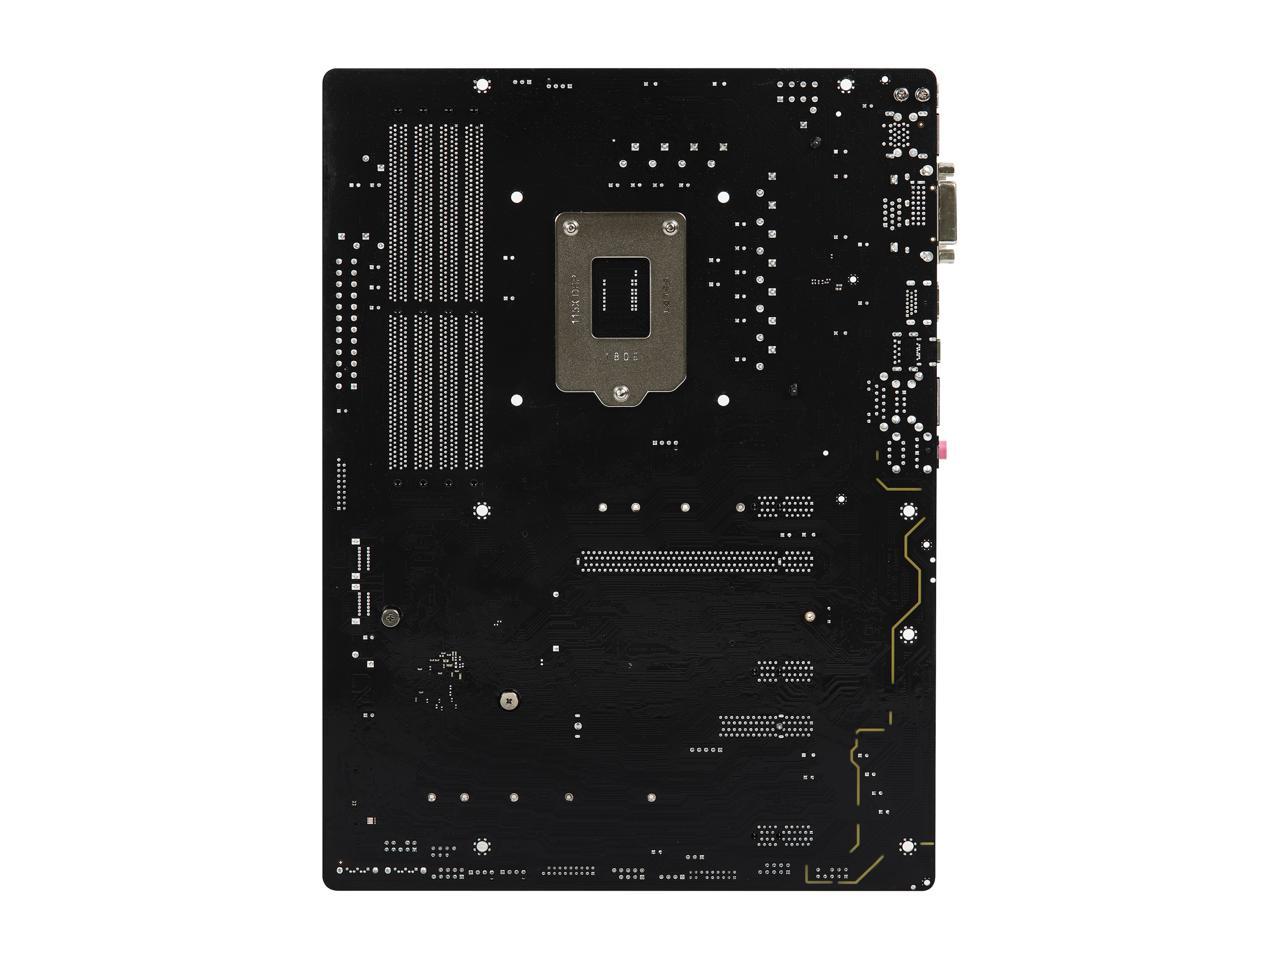 ASRock Z390 Pro4 LGA 1151 (300 Series) Intel Z390 SATA 6Gb/s ATX Intel Motherboard